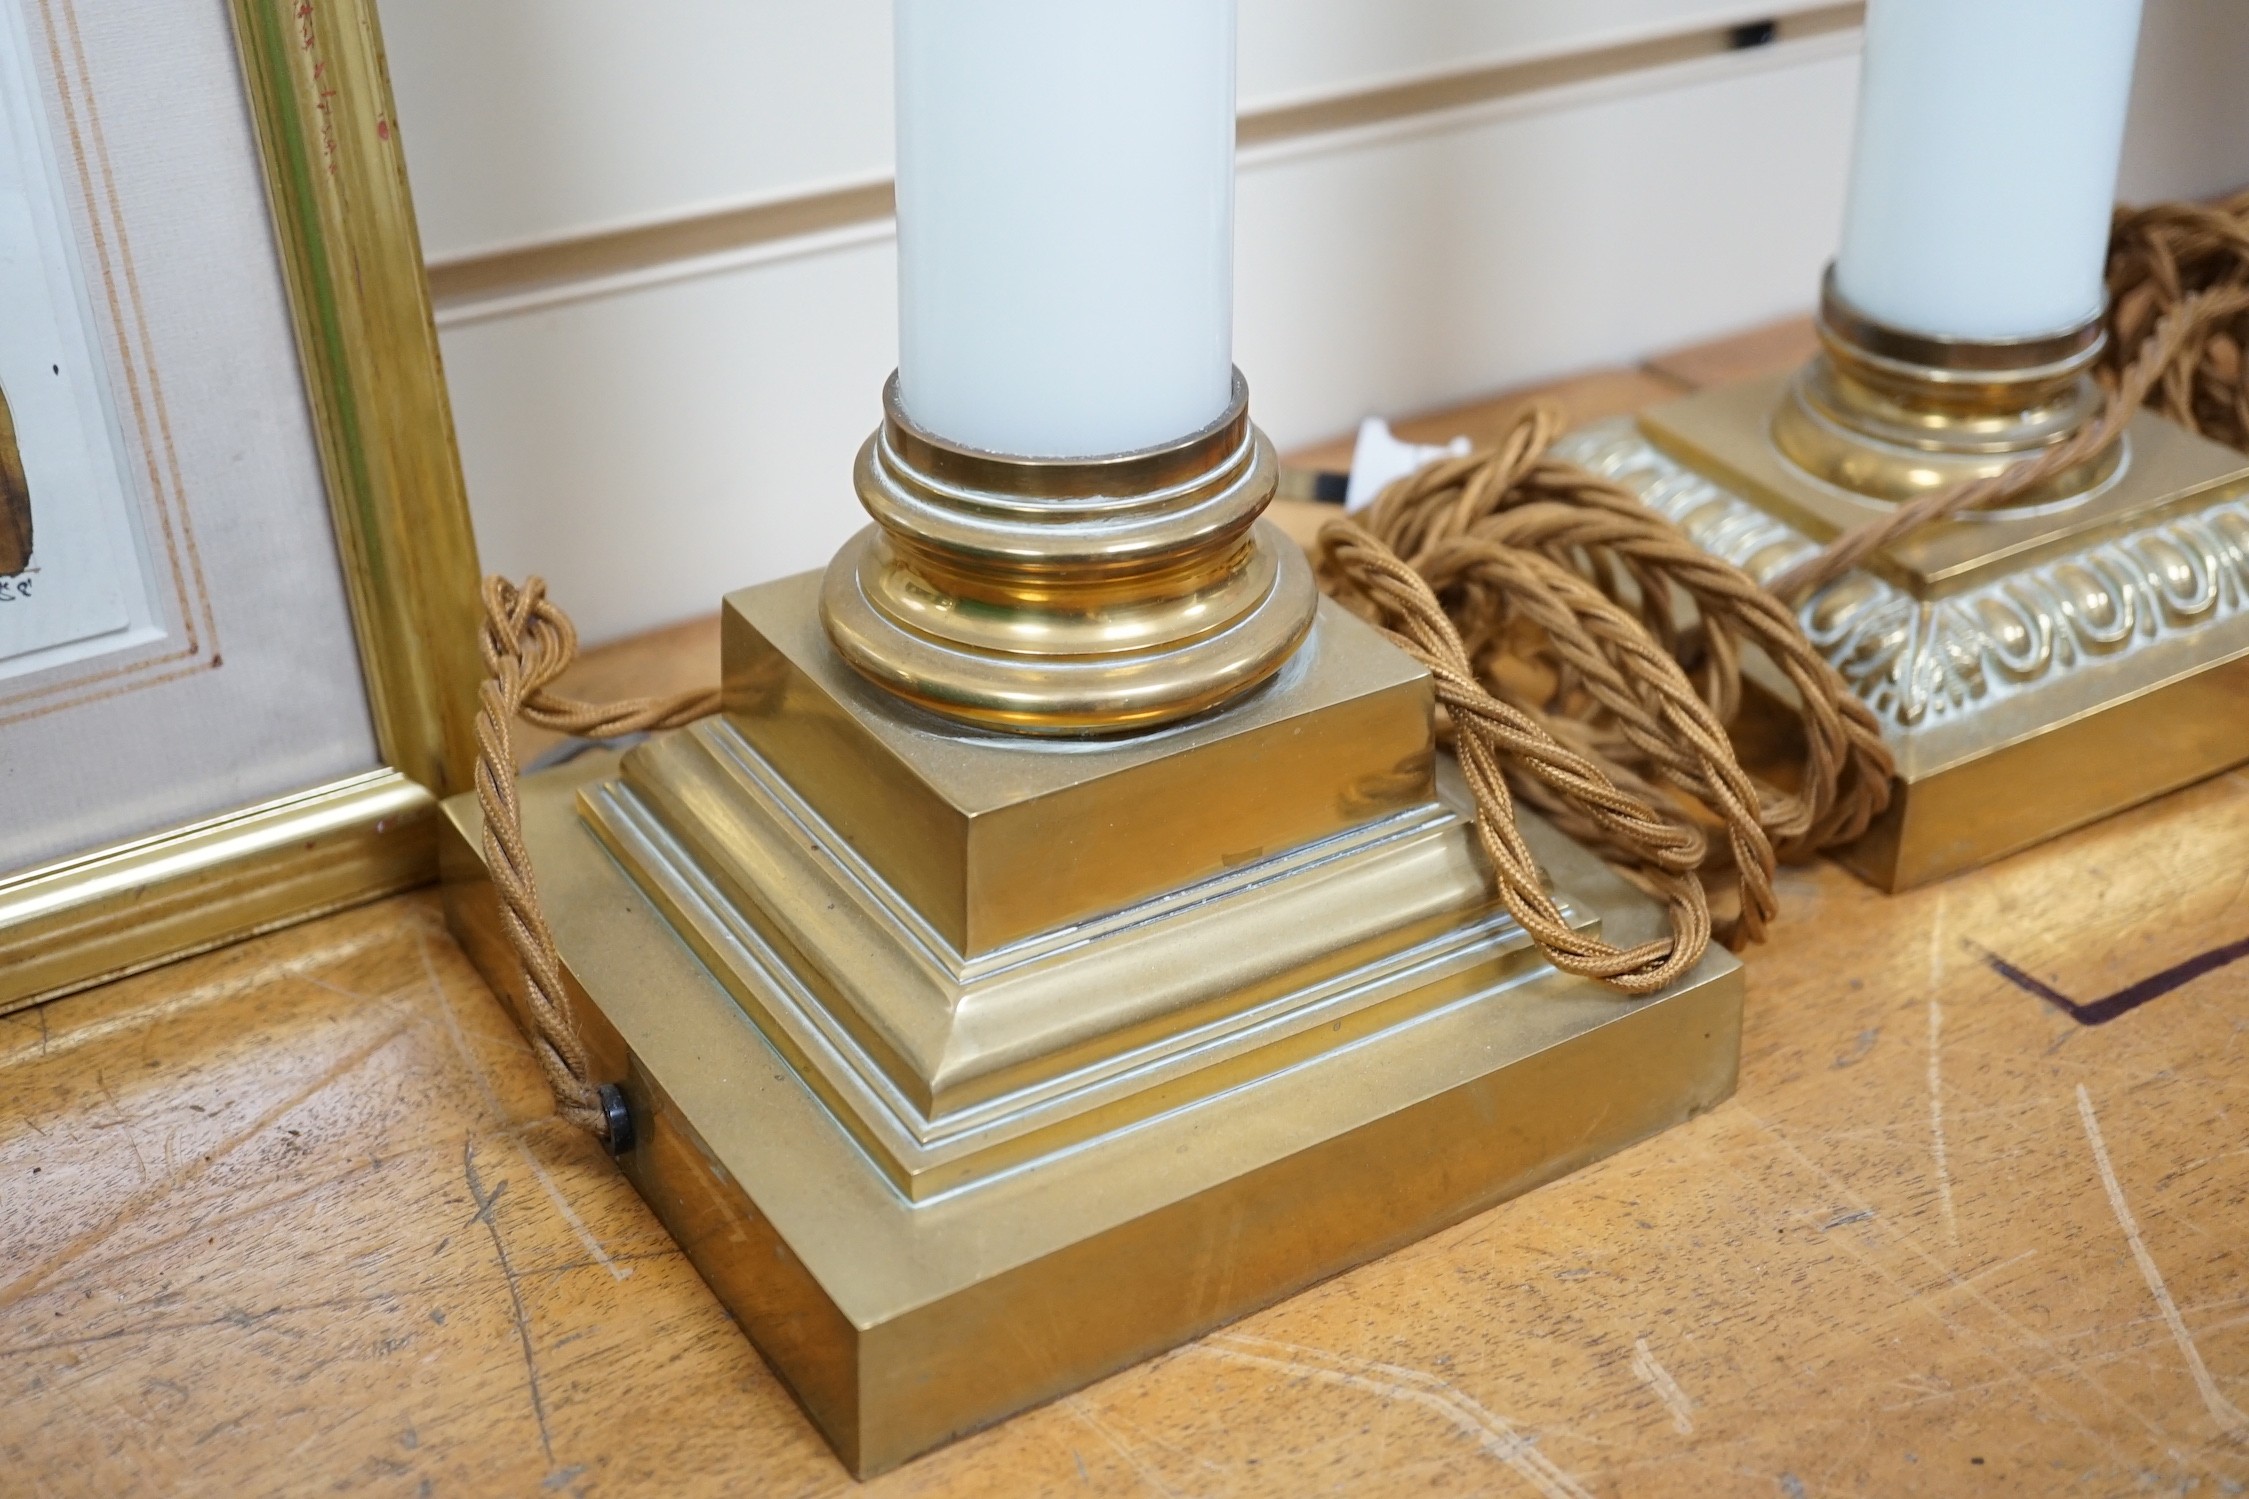 Two Corinthian column table lamps